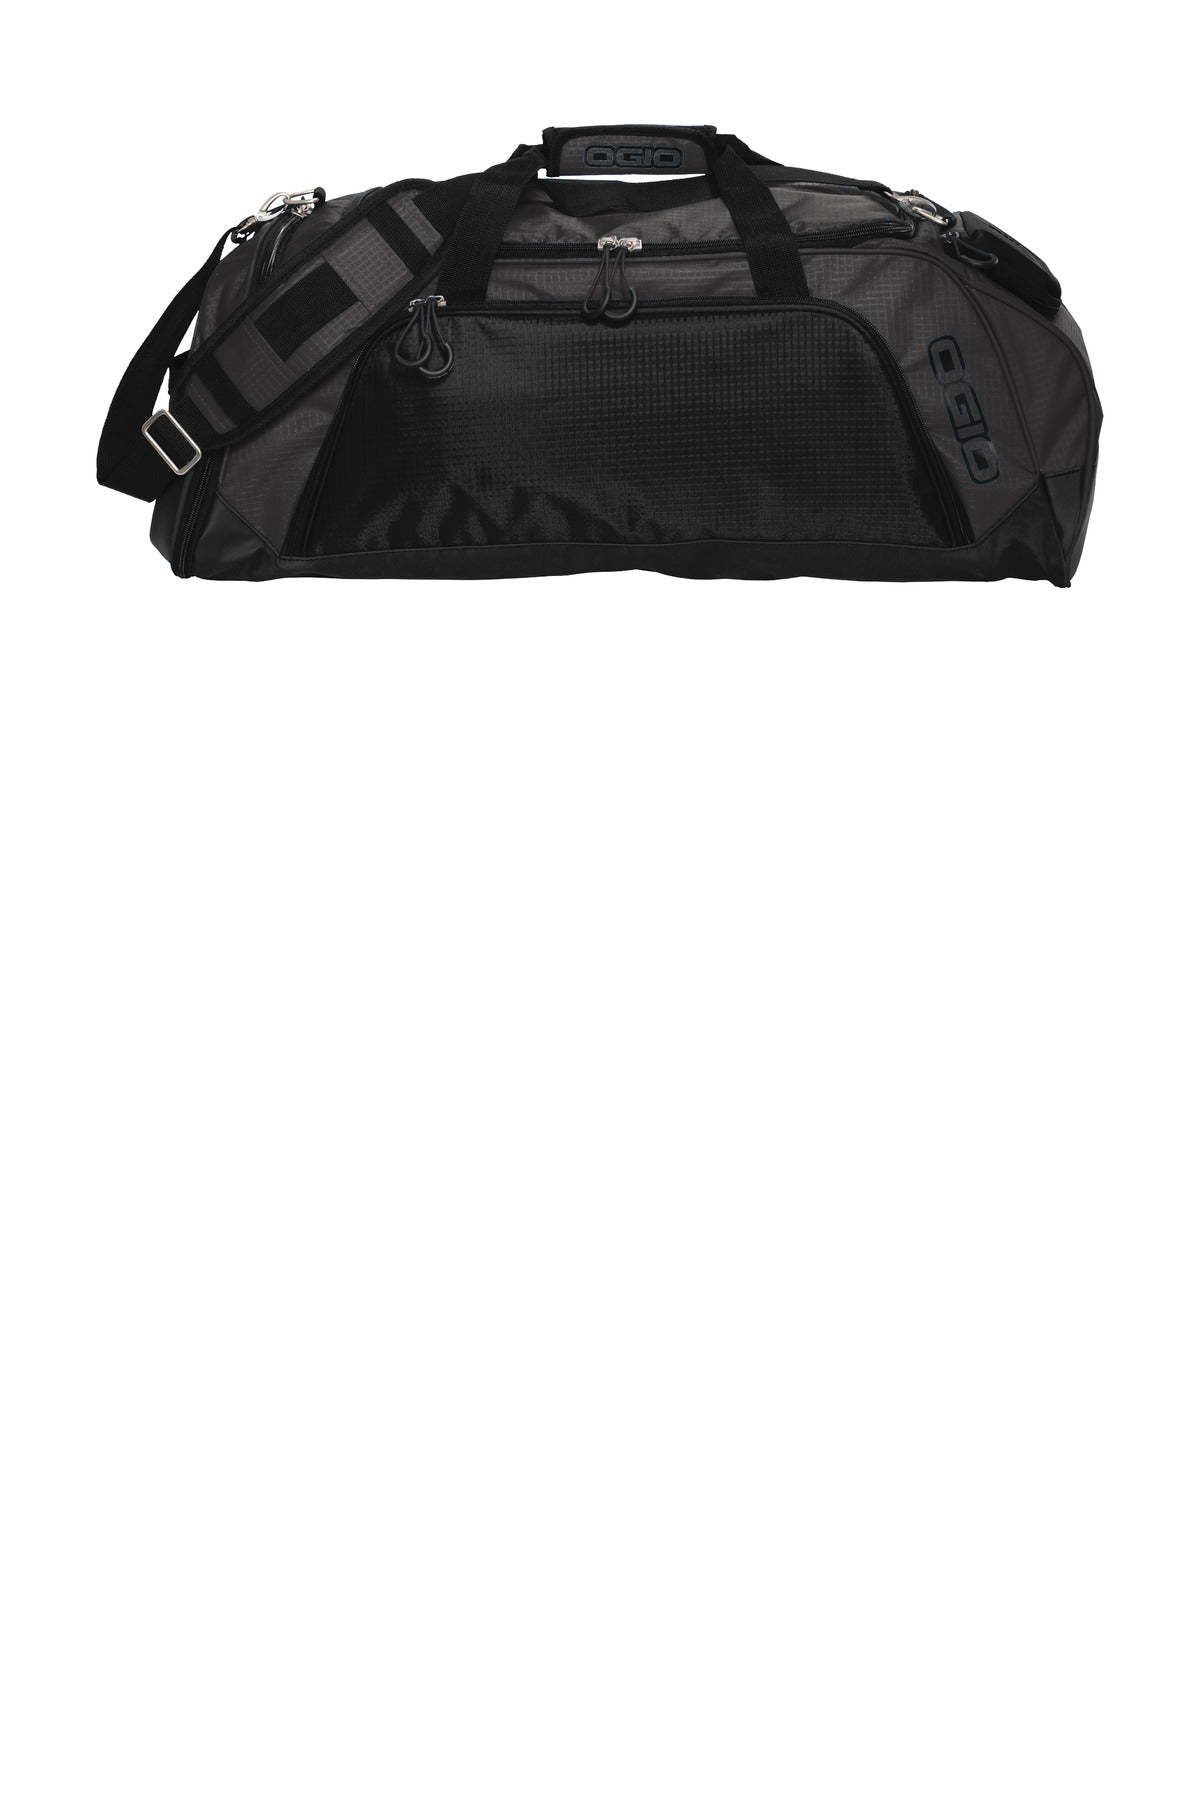 Bags Gear Grey/ Black OSFA OGIO